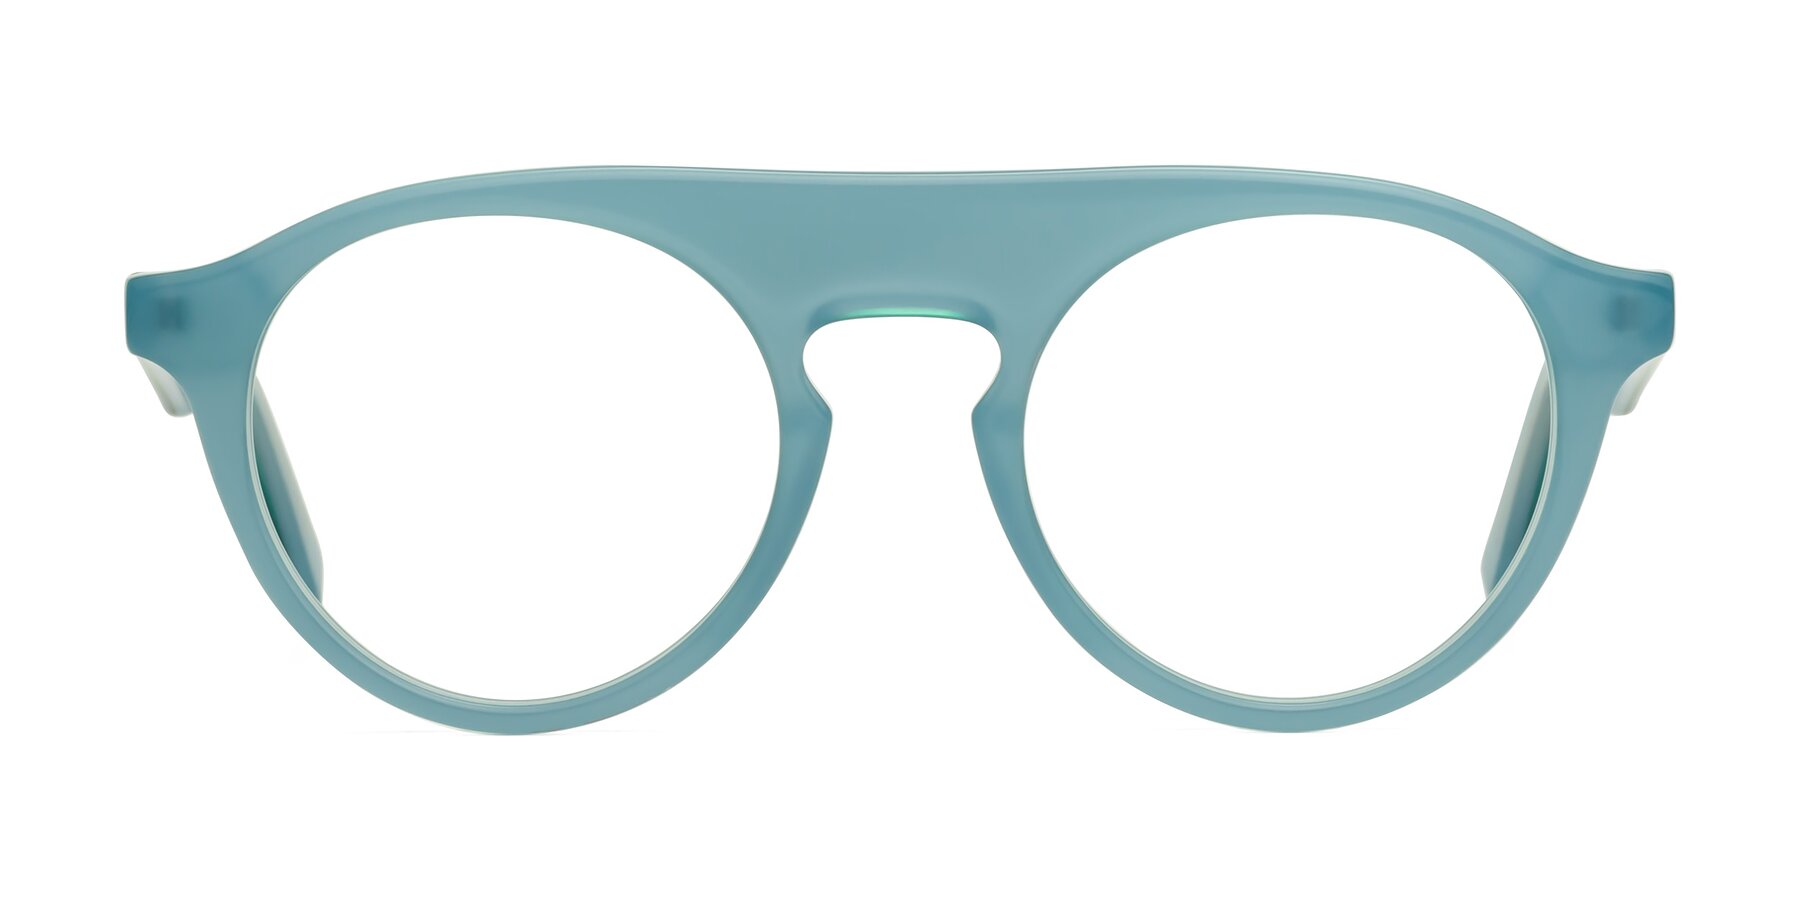 Band - Haze Blue Sunglasses Frame